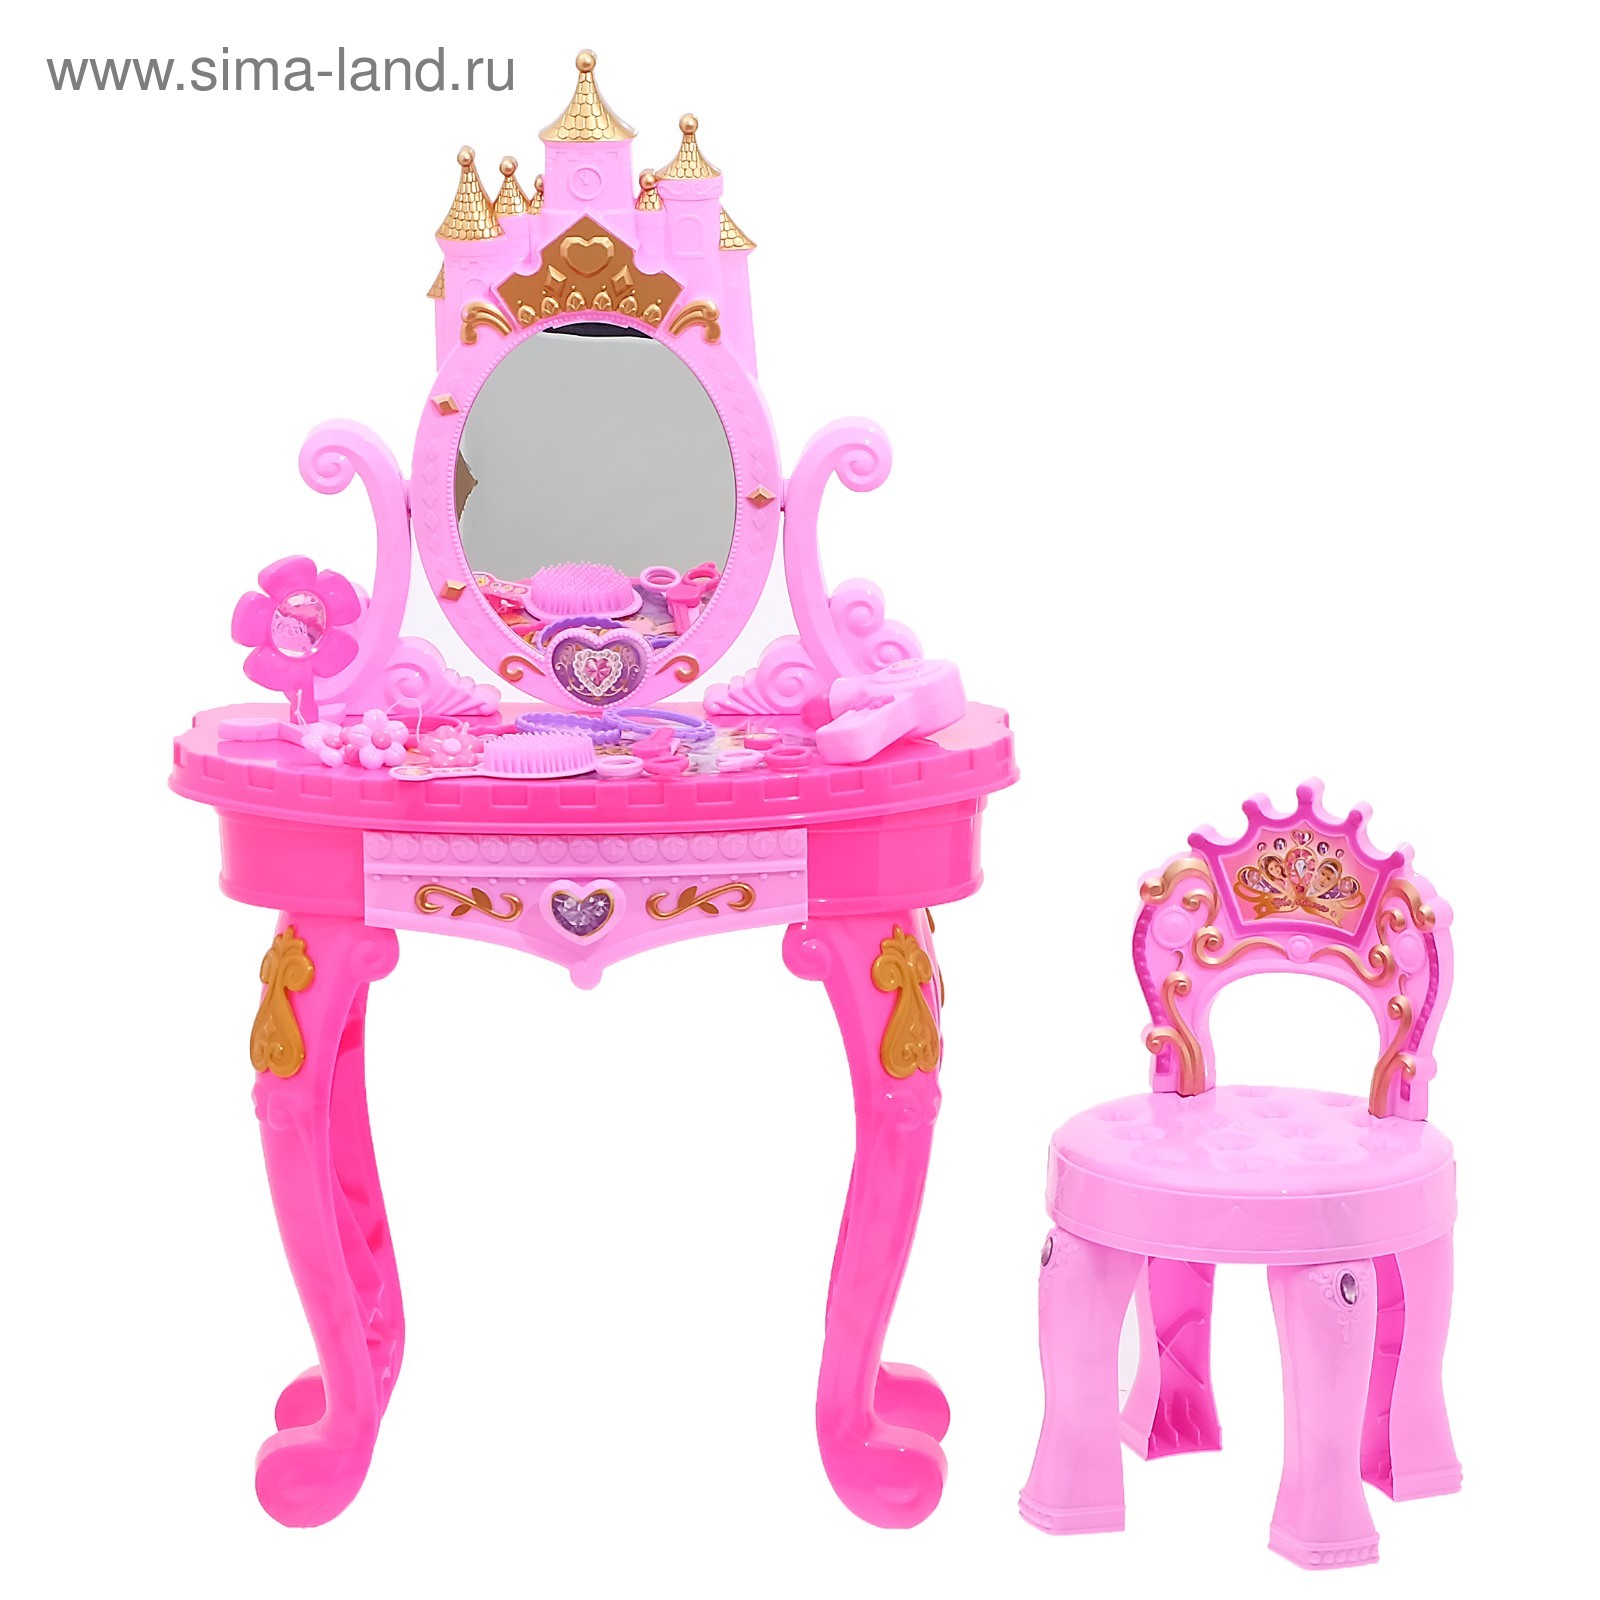 Игровой набор столик принцессы со стульчиком